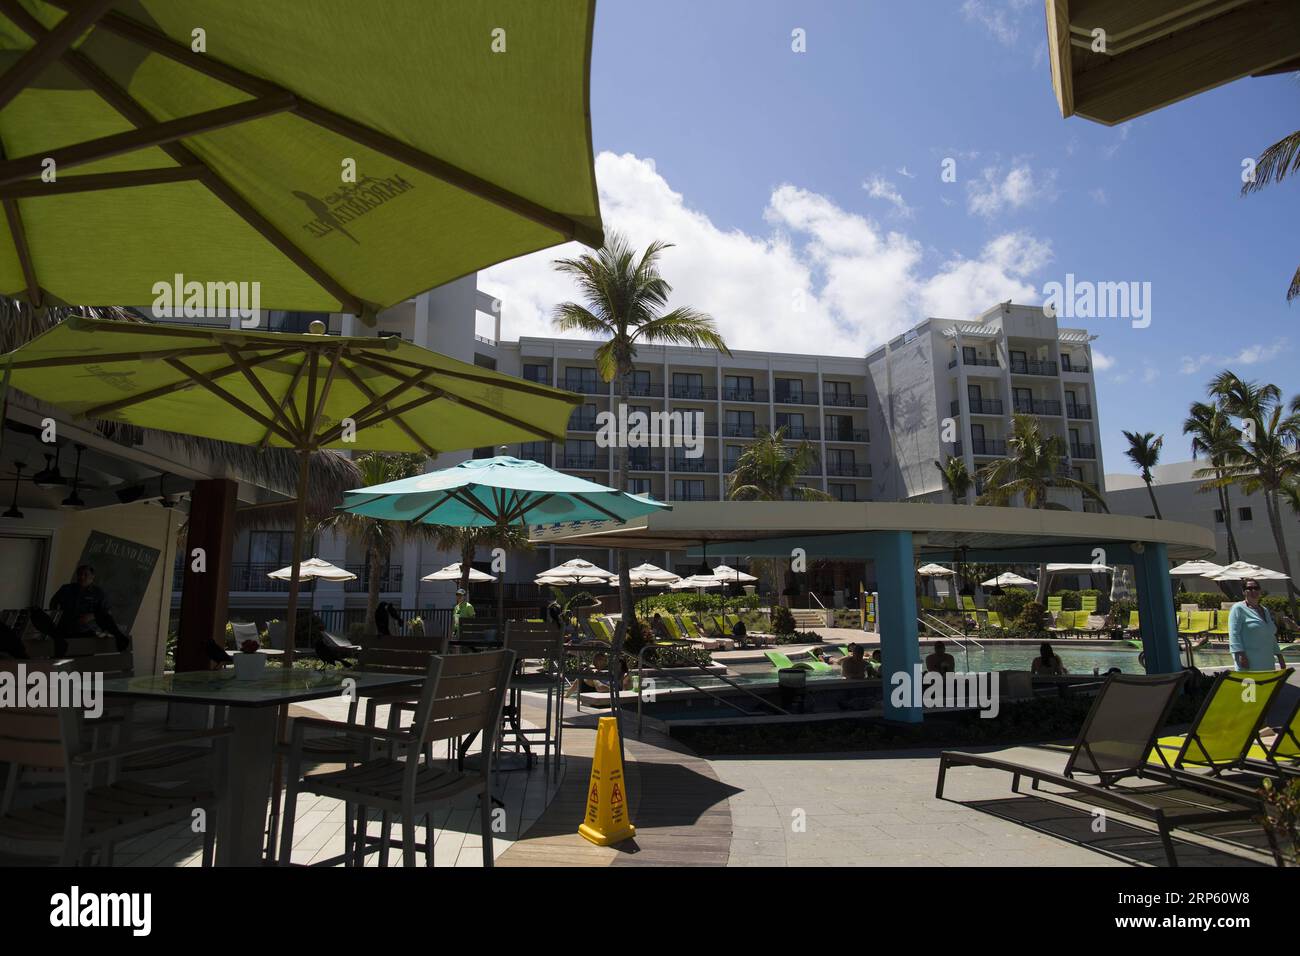 March 6, 2018 - RÖO Grande, Puerto Rico - RÖo Grande , Marzo 6 , 2018 - NEGOCIOS - FOTOS para ilustrar una historia sobre el Hotel Wyndham Grand RÖo Mar Beach Resort, hospederÖa que reabri el 1 de marzo tras haber estado por meses cerrada tras el paso del huracn MarÖa. En el hotel se invirtieron sobre $25 millones entre reparaciones y renovaciones a los restaurantes, las habitaciones, las piscinas y las reas recreativas. EN LA FOTO una vista del 5 OClock Somewhere Bar & Grill ..FOTO POR: tonito.zayas@gfrmedia.com.Ramon Tonito Zayas / GFR Media (Credit Image: © /El Nuevo Dias via ZUMA Press) La Stock Photo